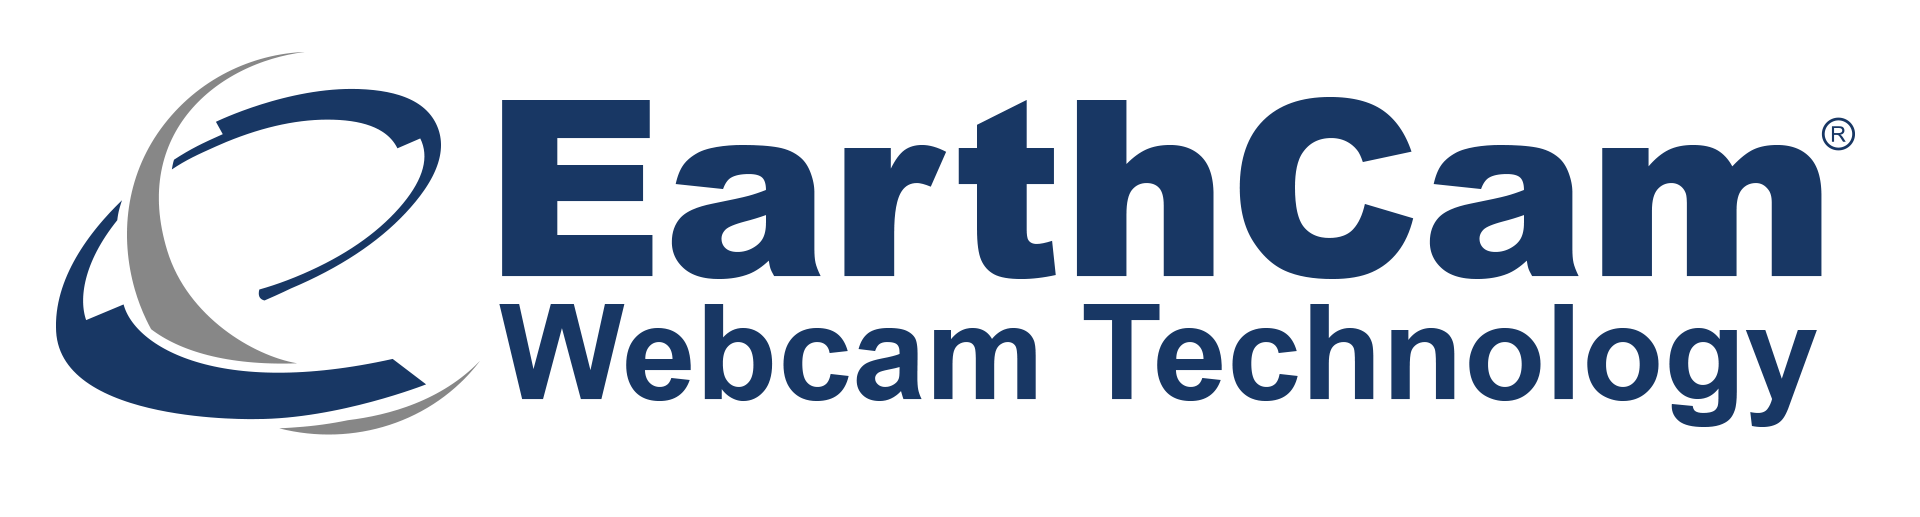 EarthCam